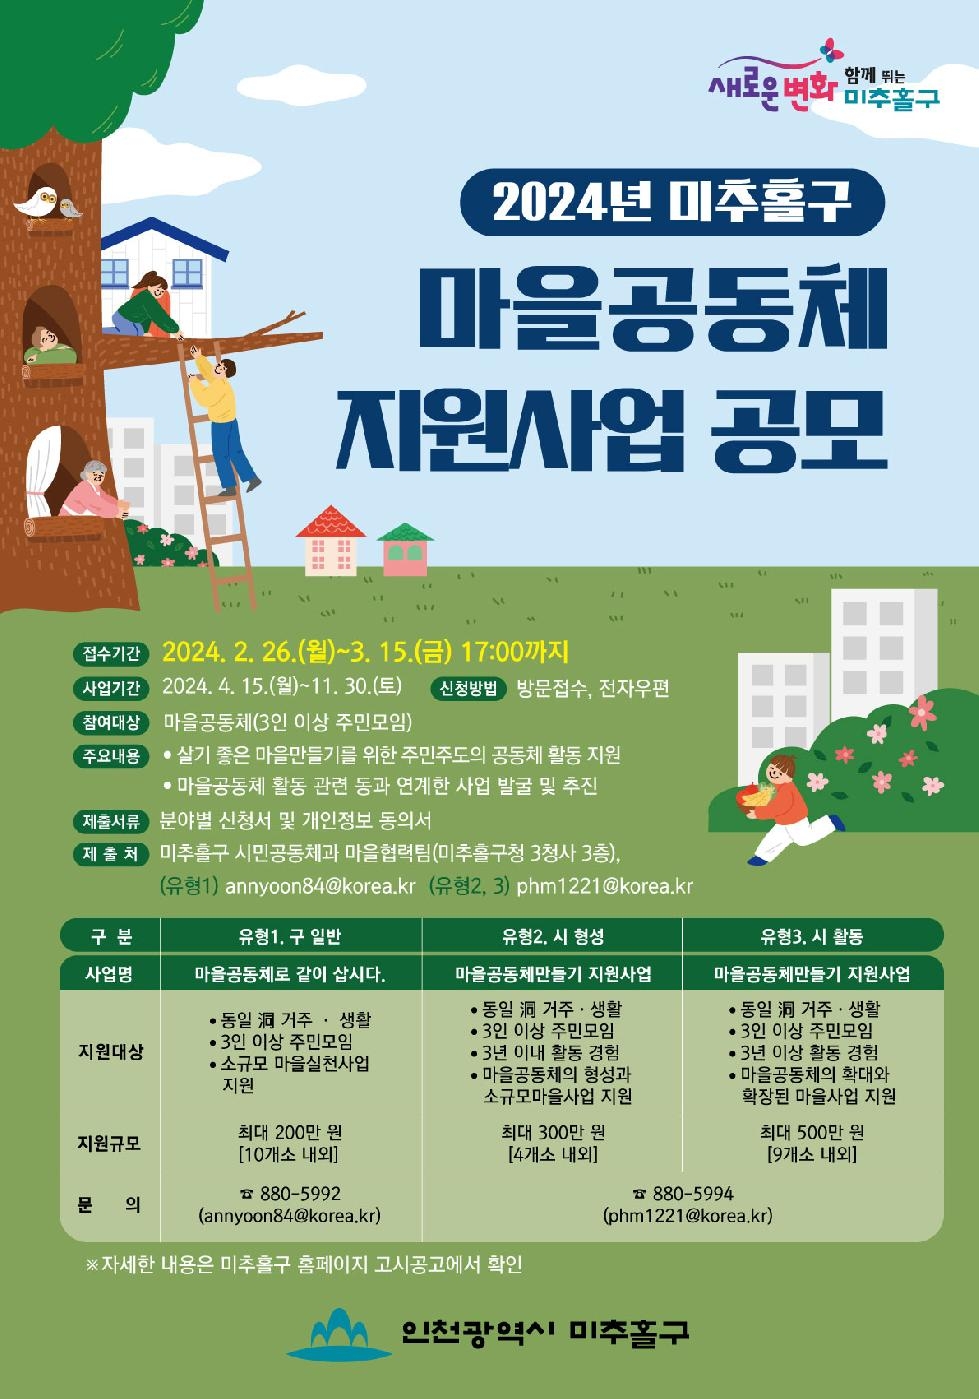 인천 미추홀구, ‘2024년 마을공동체 지원사업’ 참여 공동체 모집해